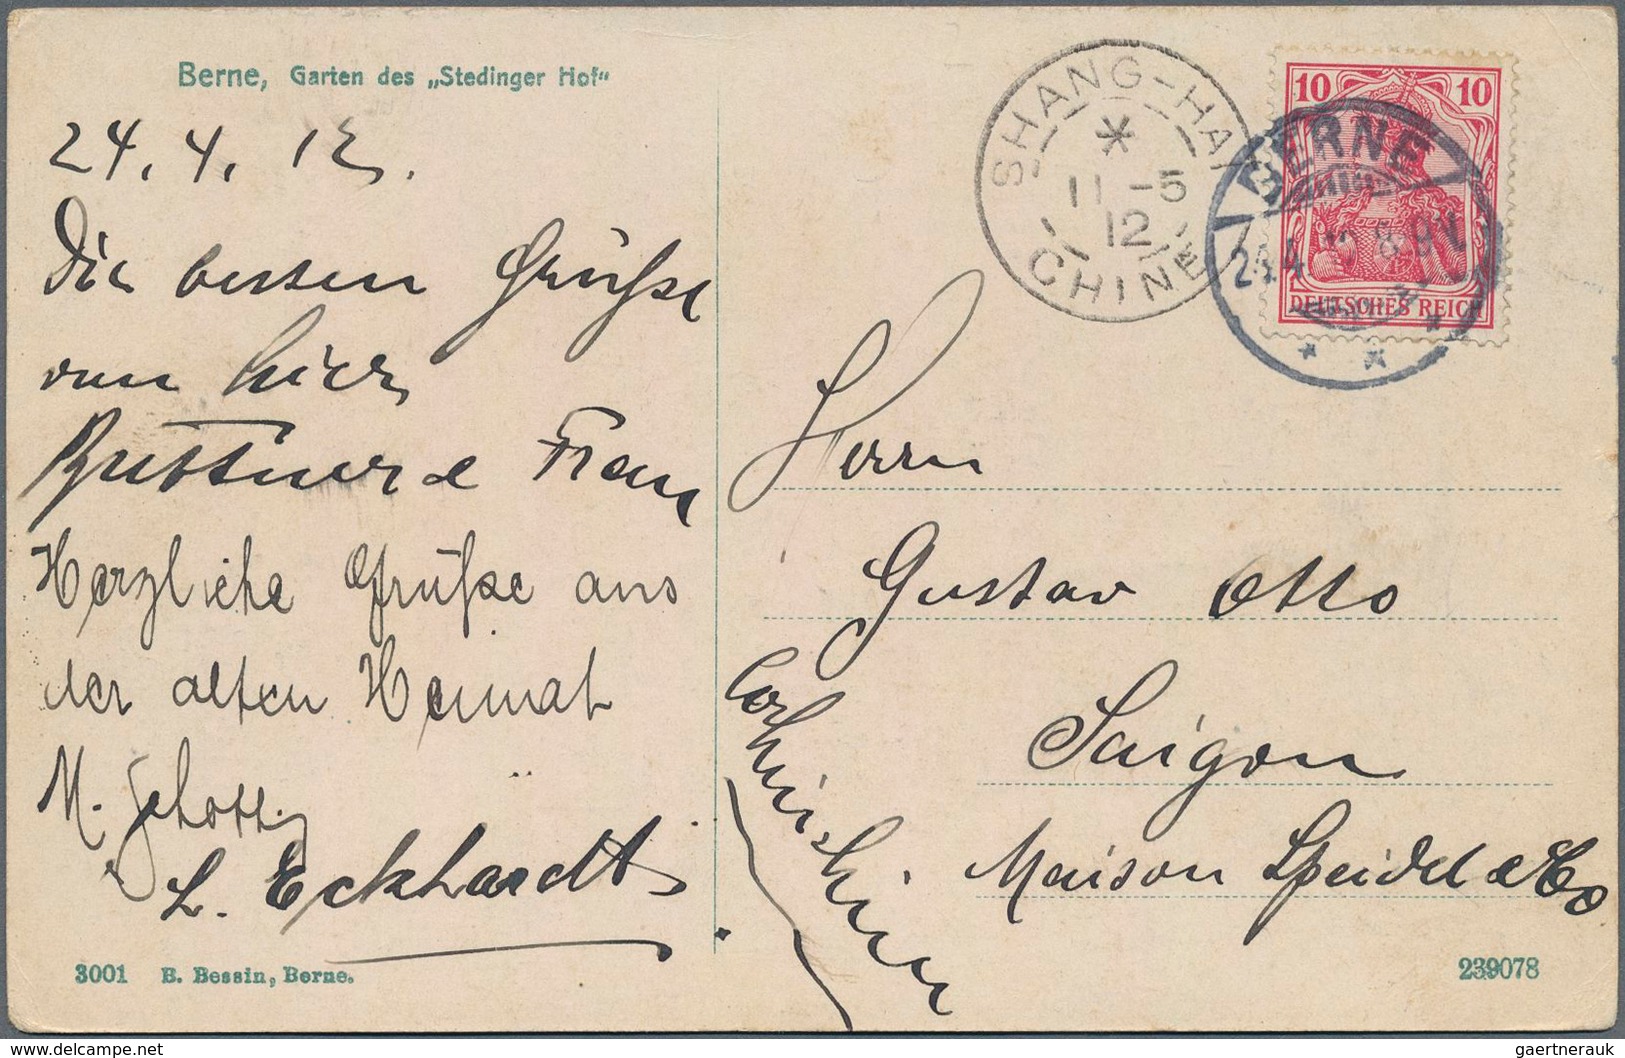 Deutsche Post in China: 1900/1912, kleine Partie von neun Belegen "Incoming Mail" aus Deutschland (6